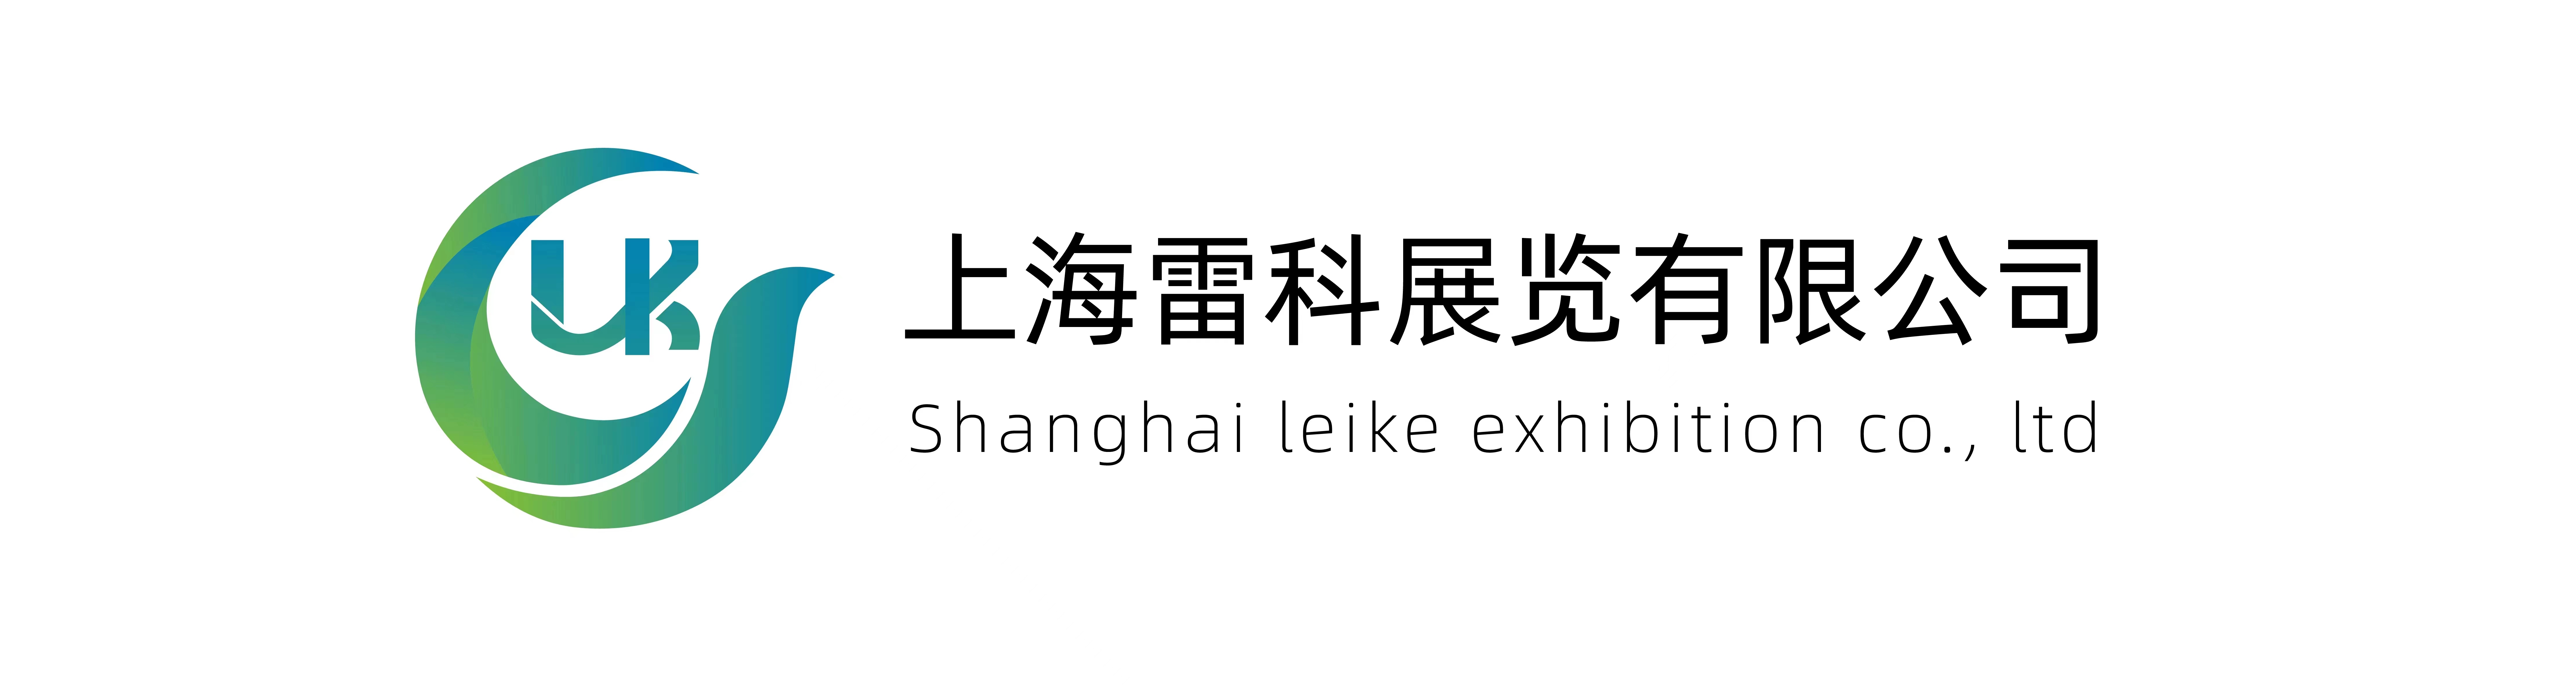 上海雷科展览有限公司